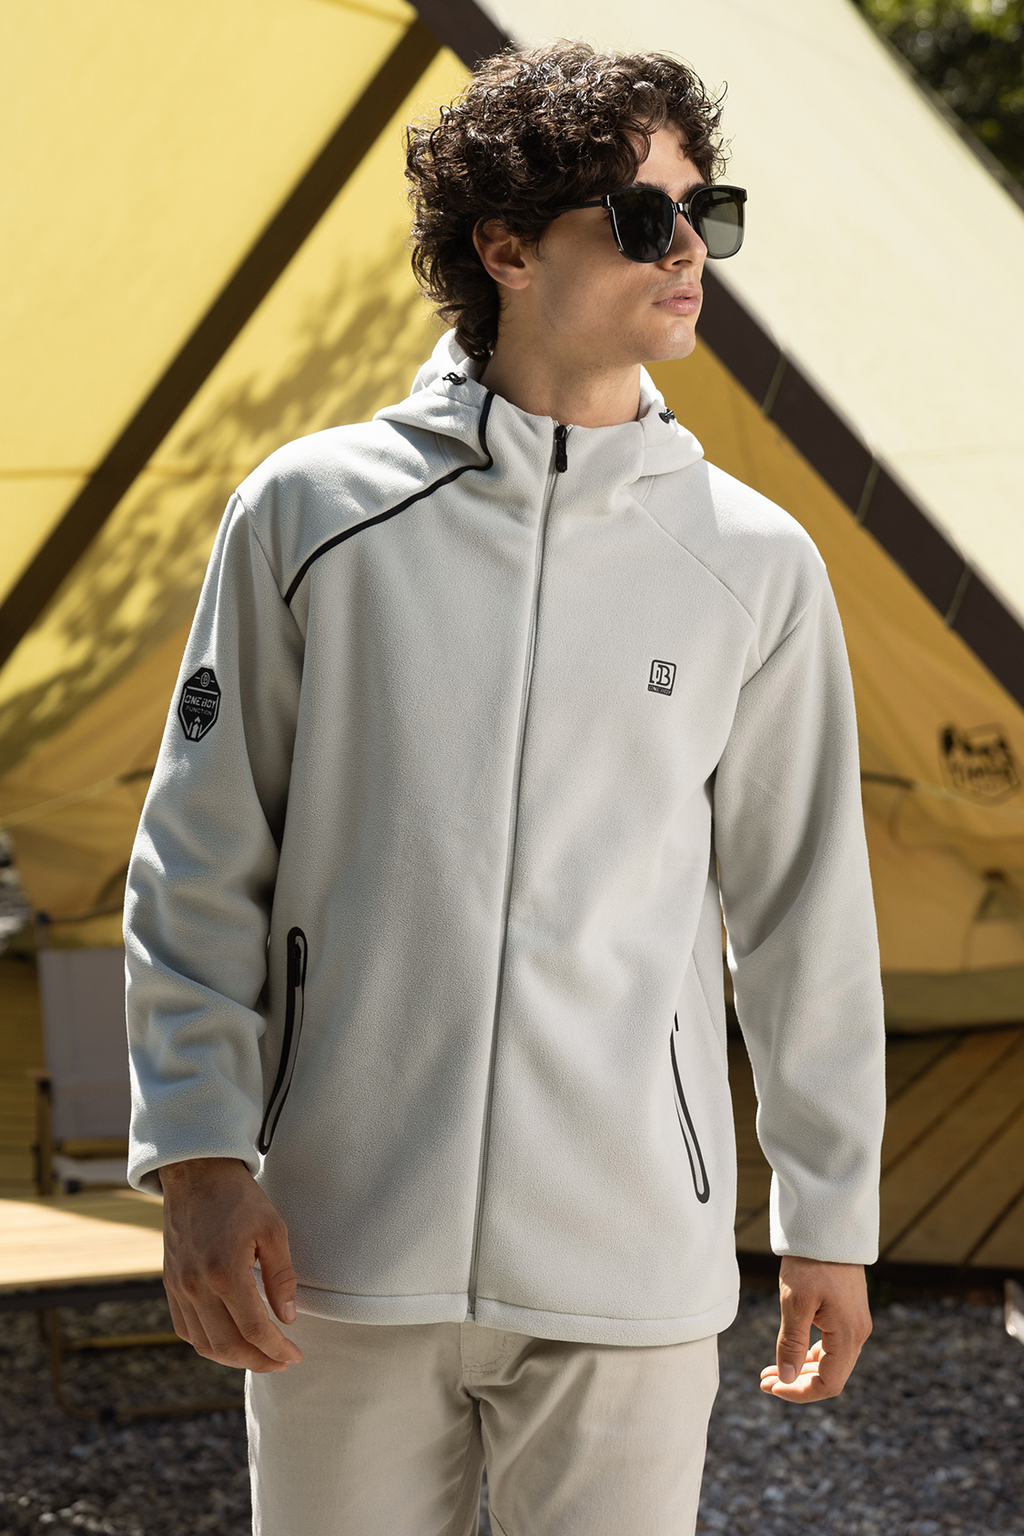 Aquaproof Windresist Light 3-in-1 Interchange Oneboy® Men Protective Outdoor Clothing | Jackets For | Activities